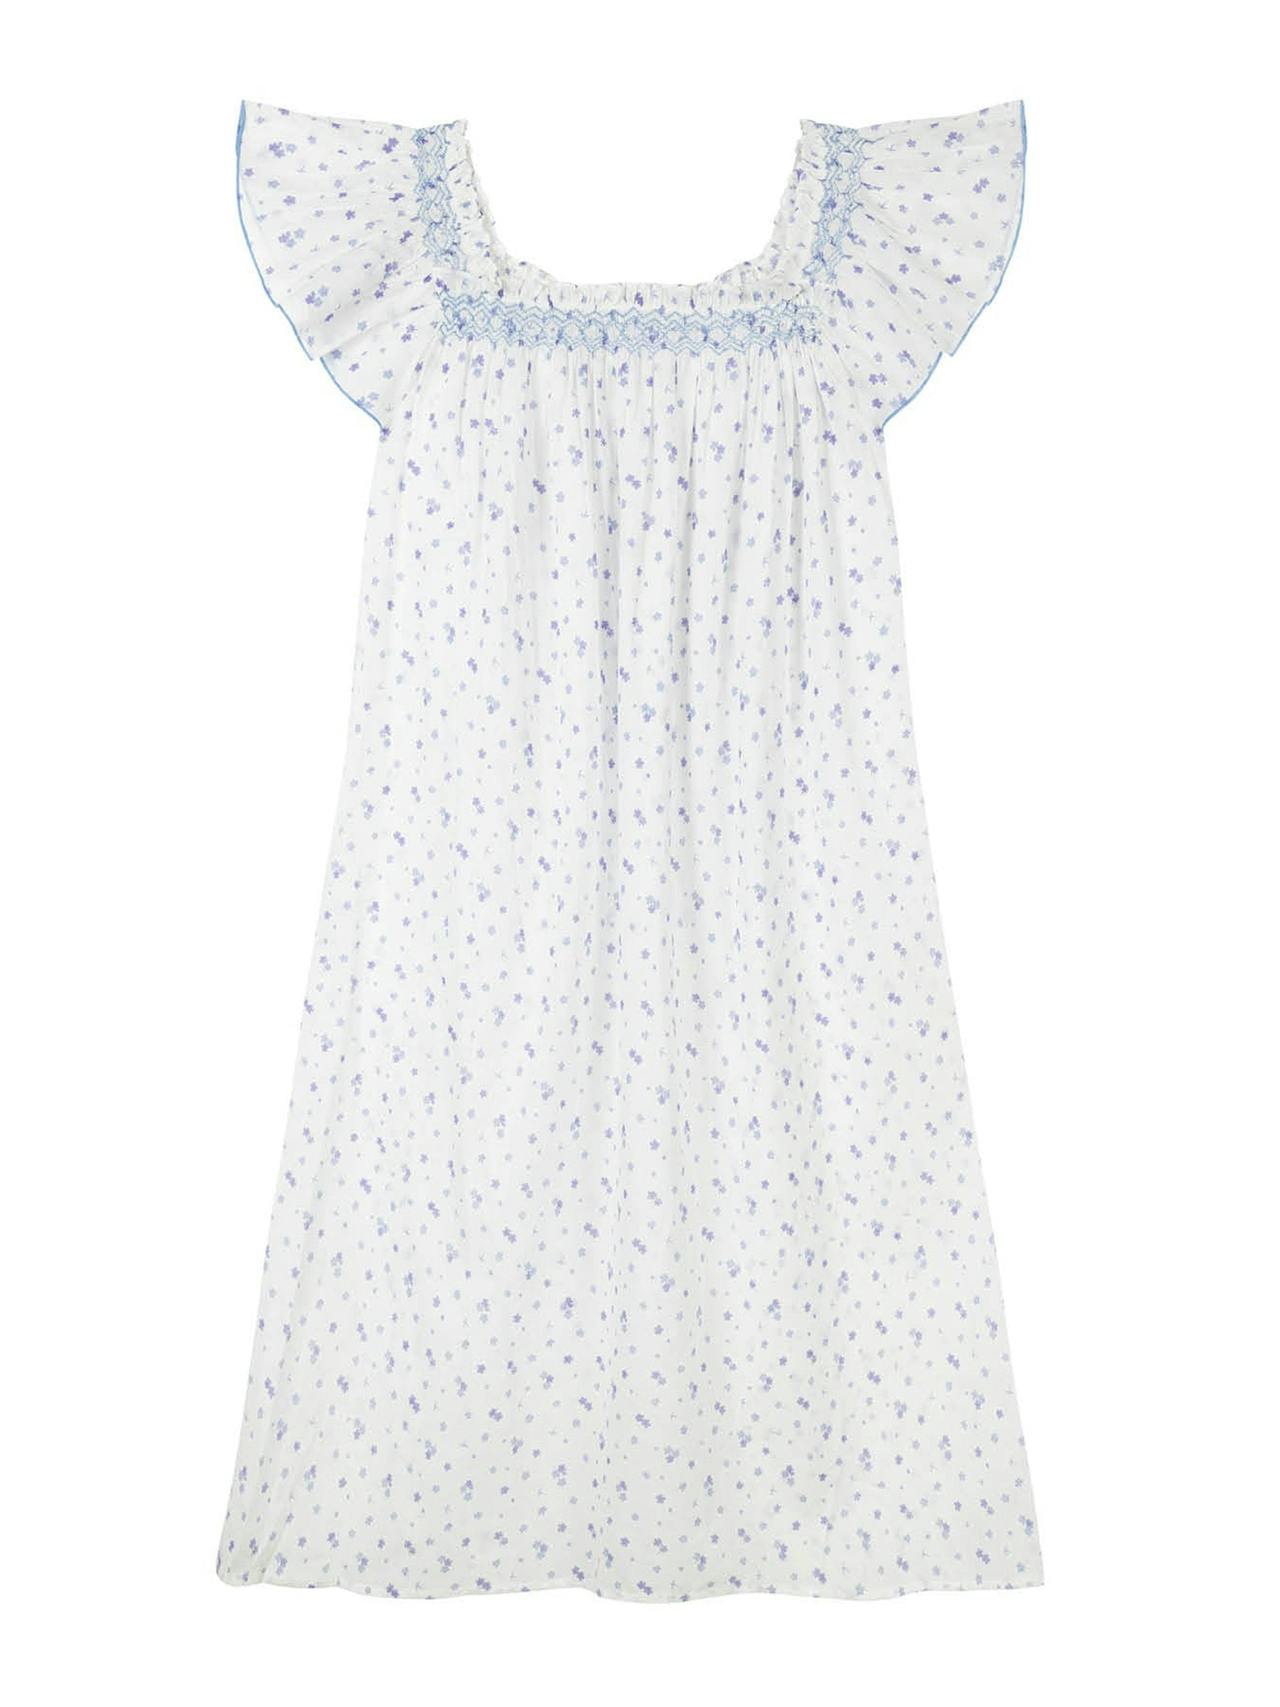 Cotton Poppy Plumbago nightgown